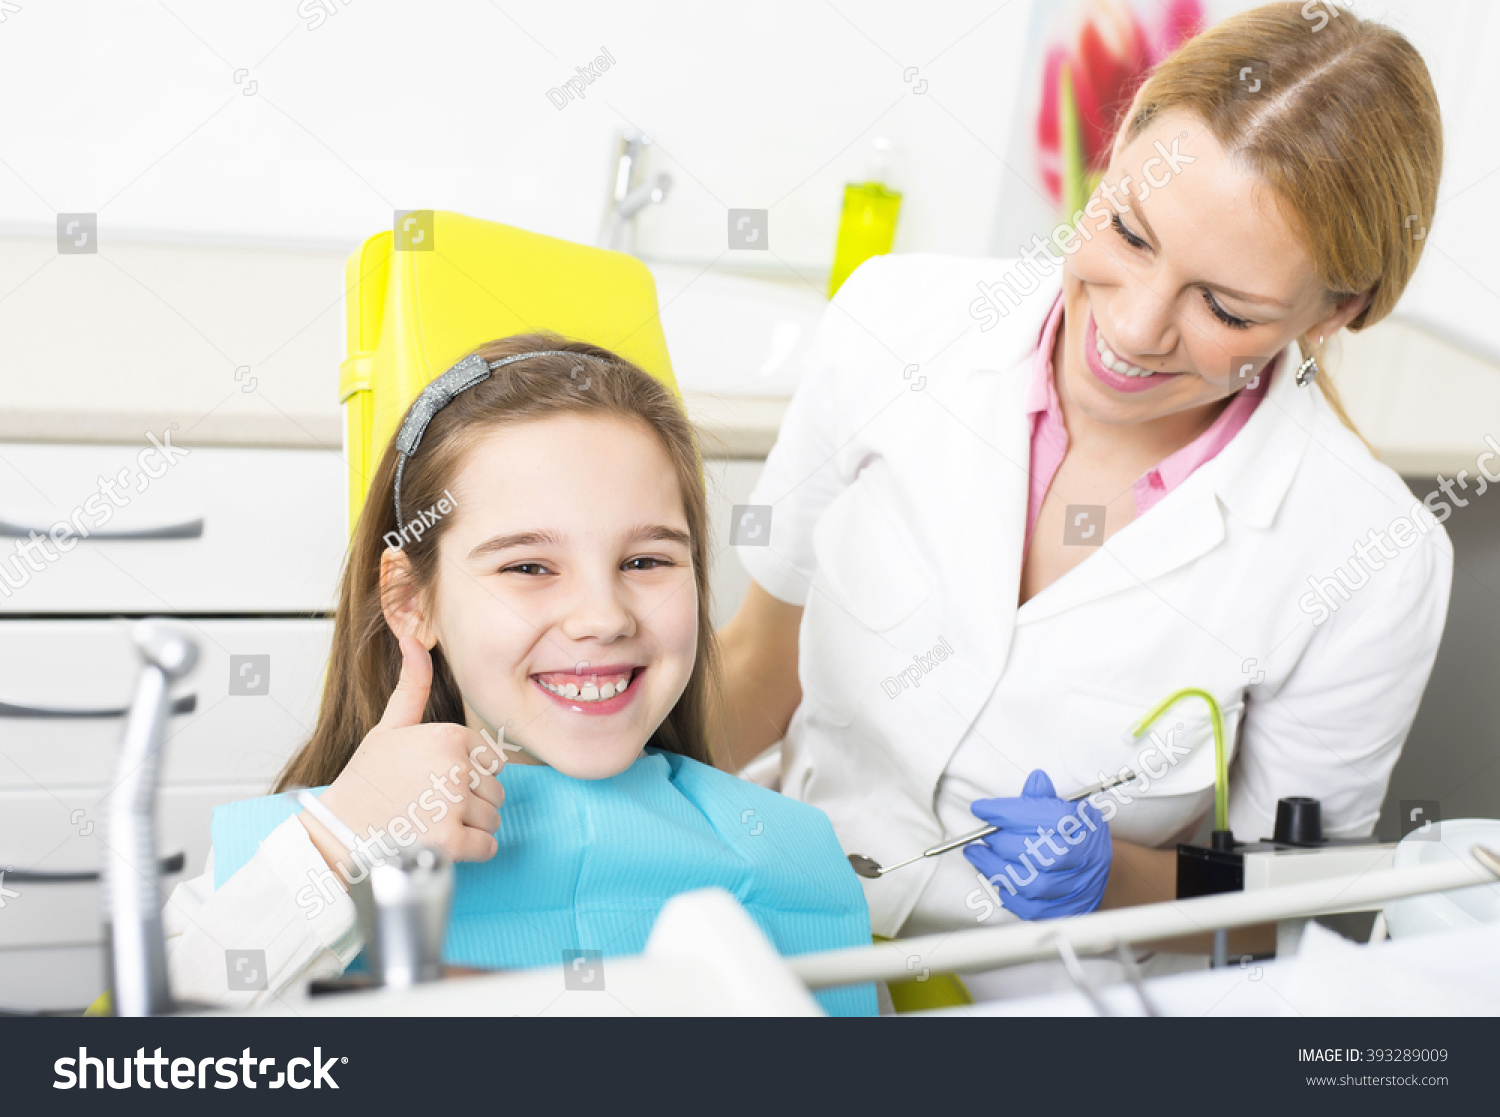 Детская стоматология отзывы о врачах. Стоматология дети. Детский стоматолог. Ребенок у стоматолога. Детский прием у стоматолога.